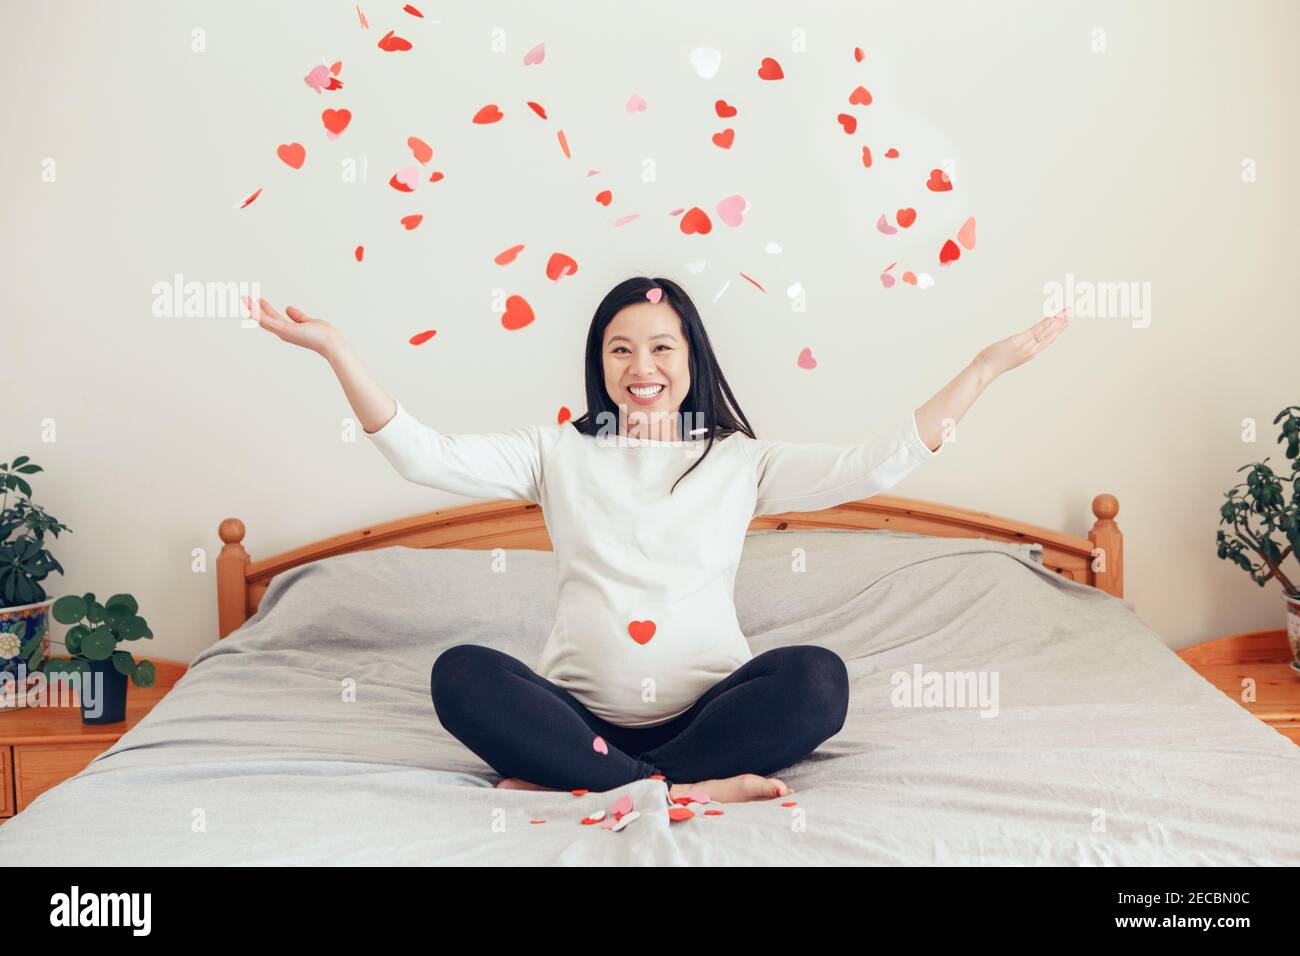 Lächelnde asiatische chinesische schwangere Frau auf dem Bett sitzen werfen kleine rote rosa Papier Herzen. Erwartet aufgeregt junge Dame weiblich zu Hause. Gesund glücklich p Stockfoto